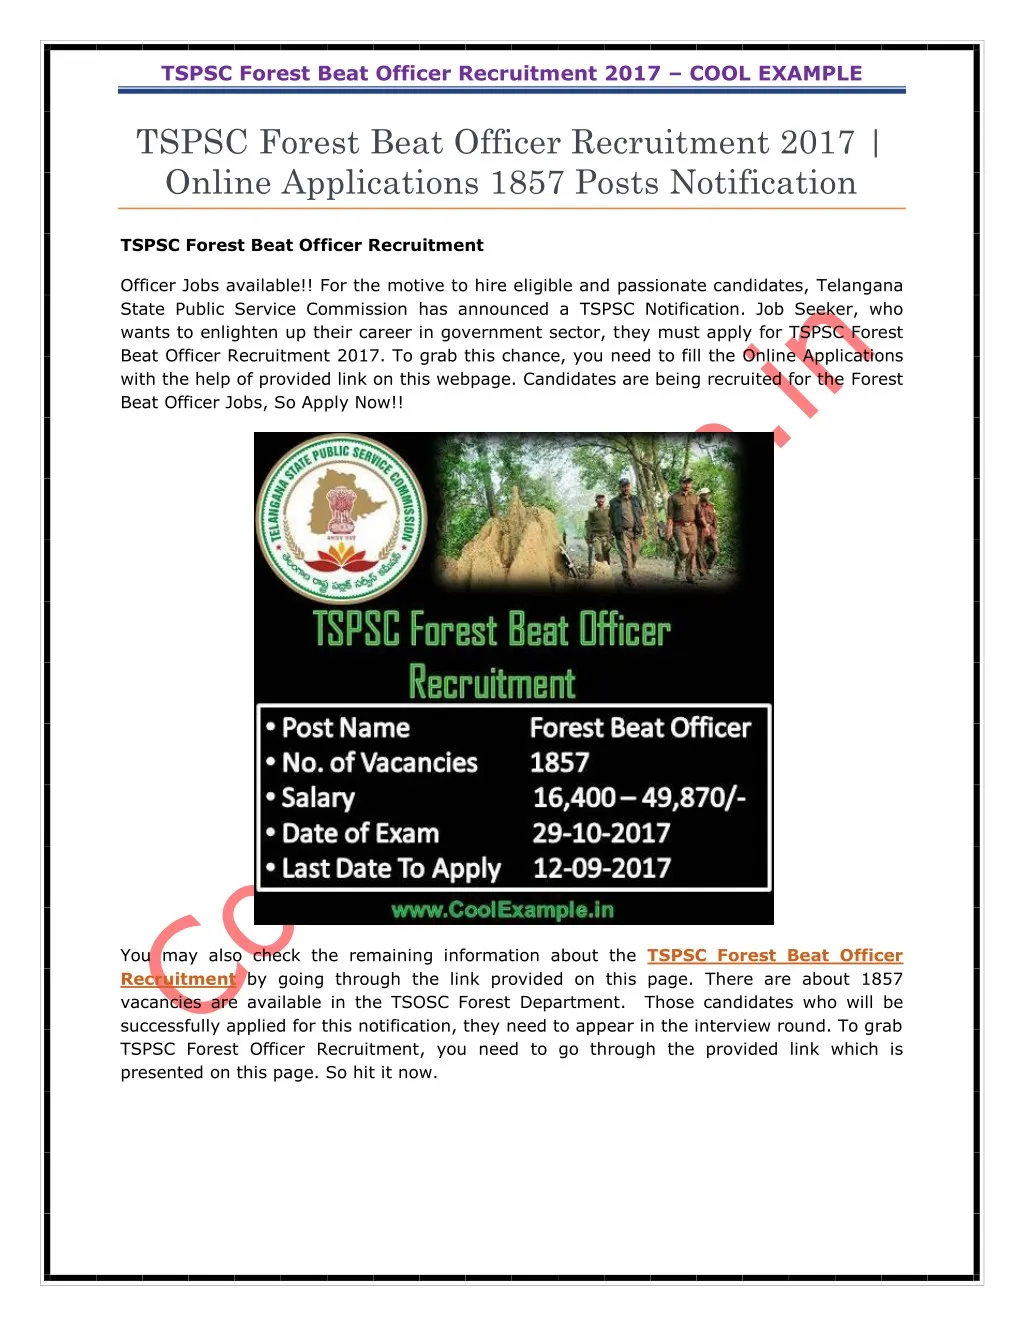 tspsc forest beat officer recruitment 2017 cool